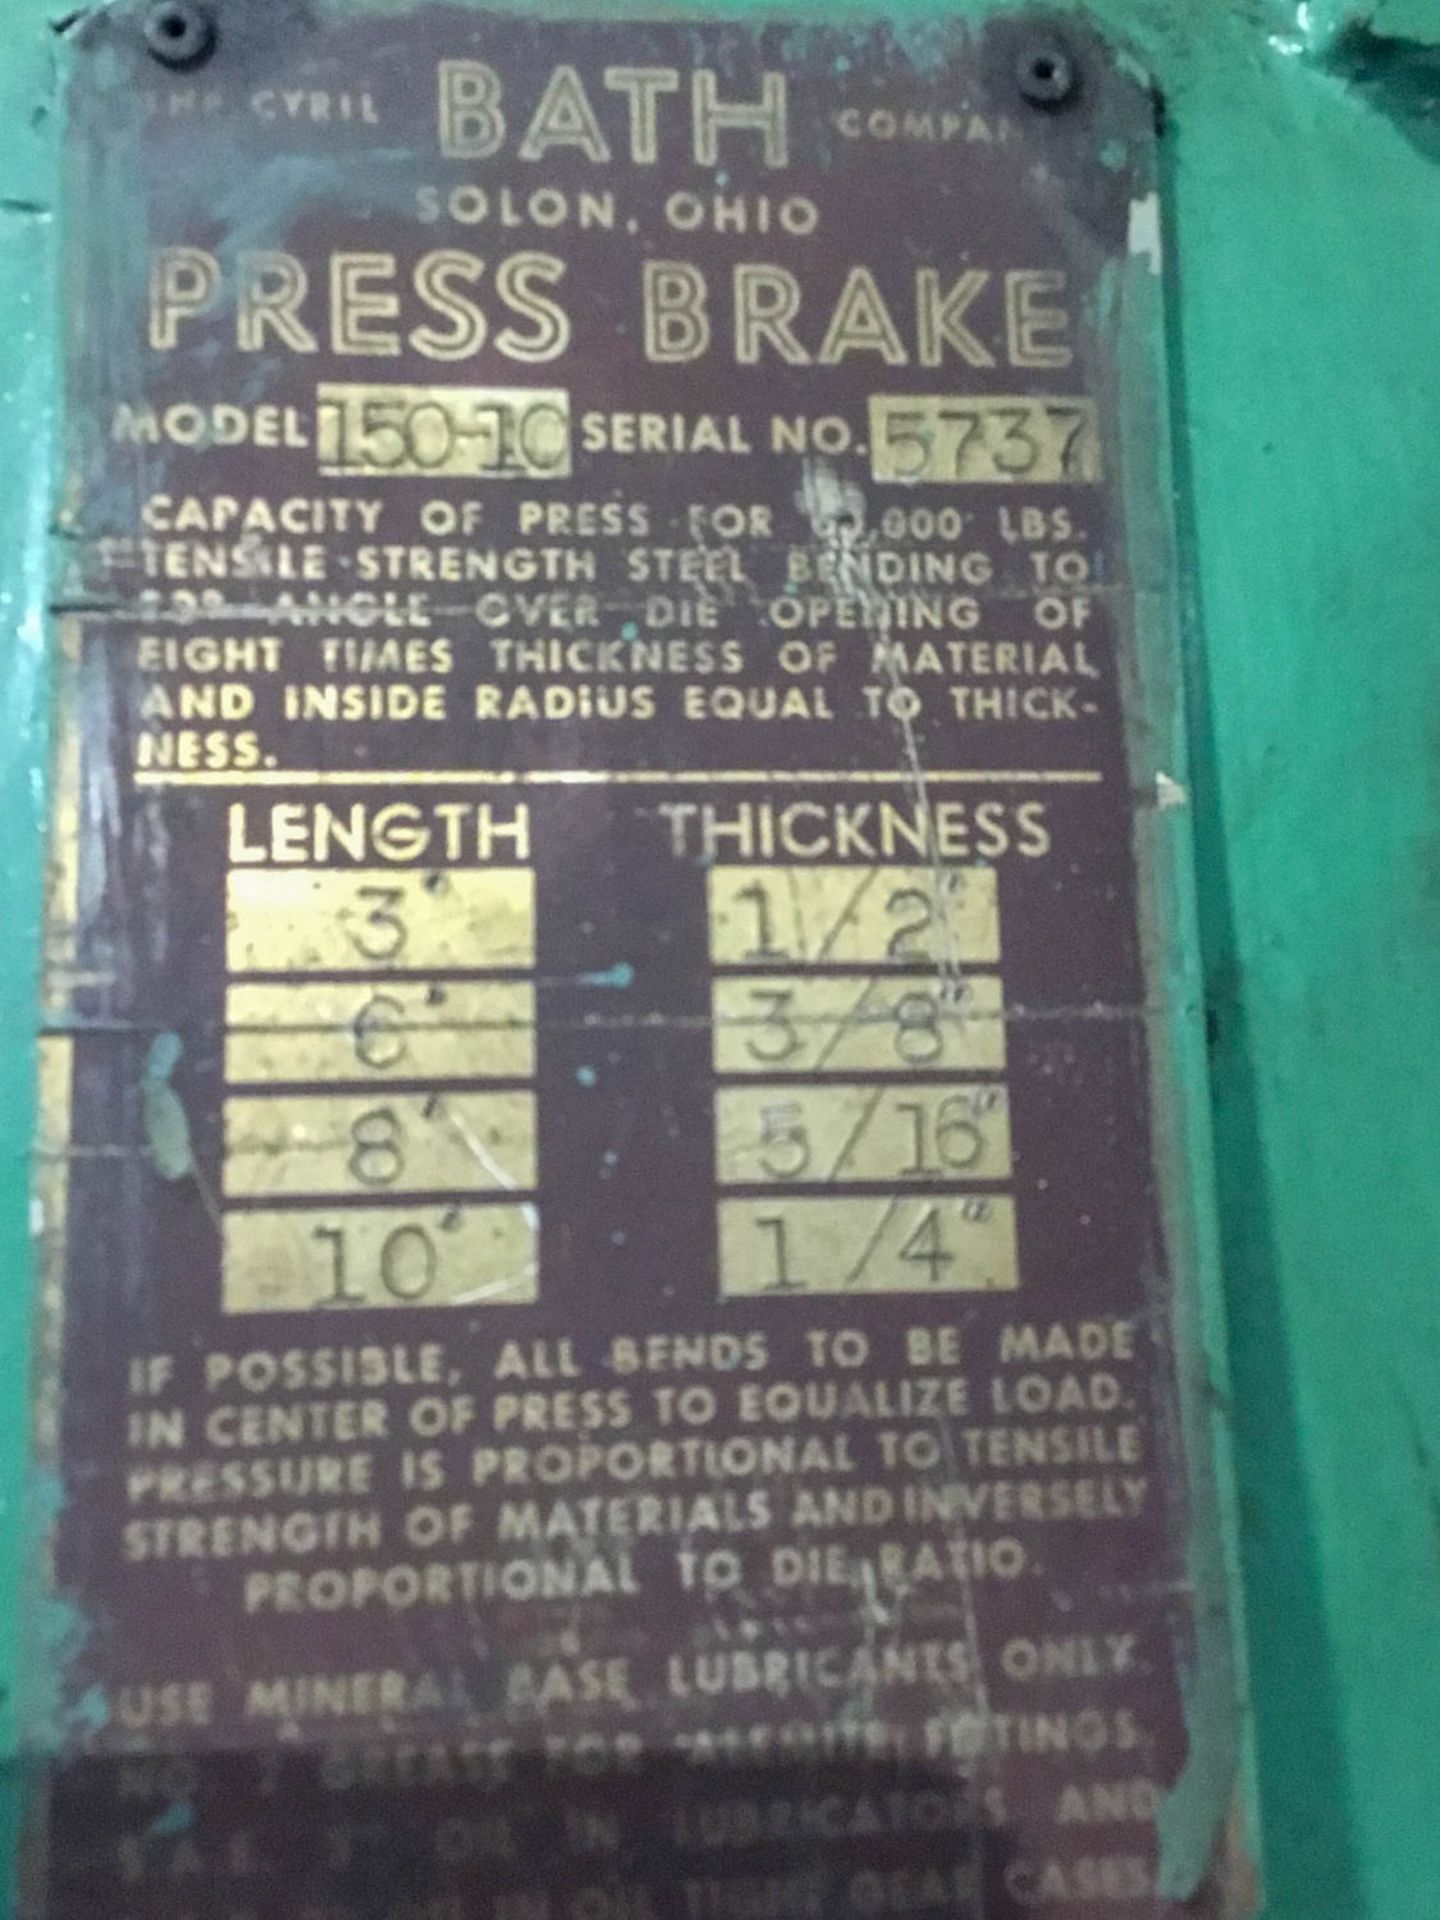 Cyril Bath Mdl. 150-10 12’ x 150 Ton Mechanical Press Brake - Image 6 of 14